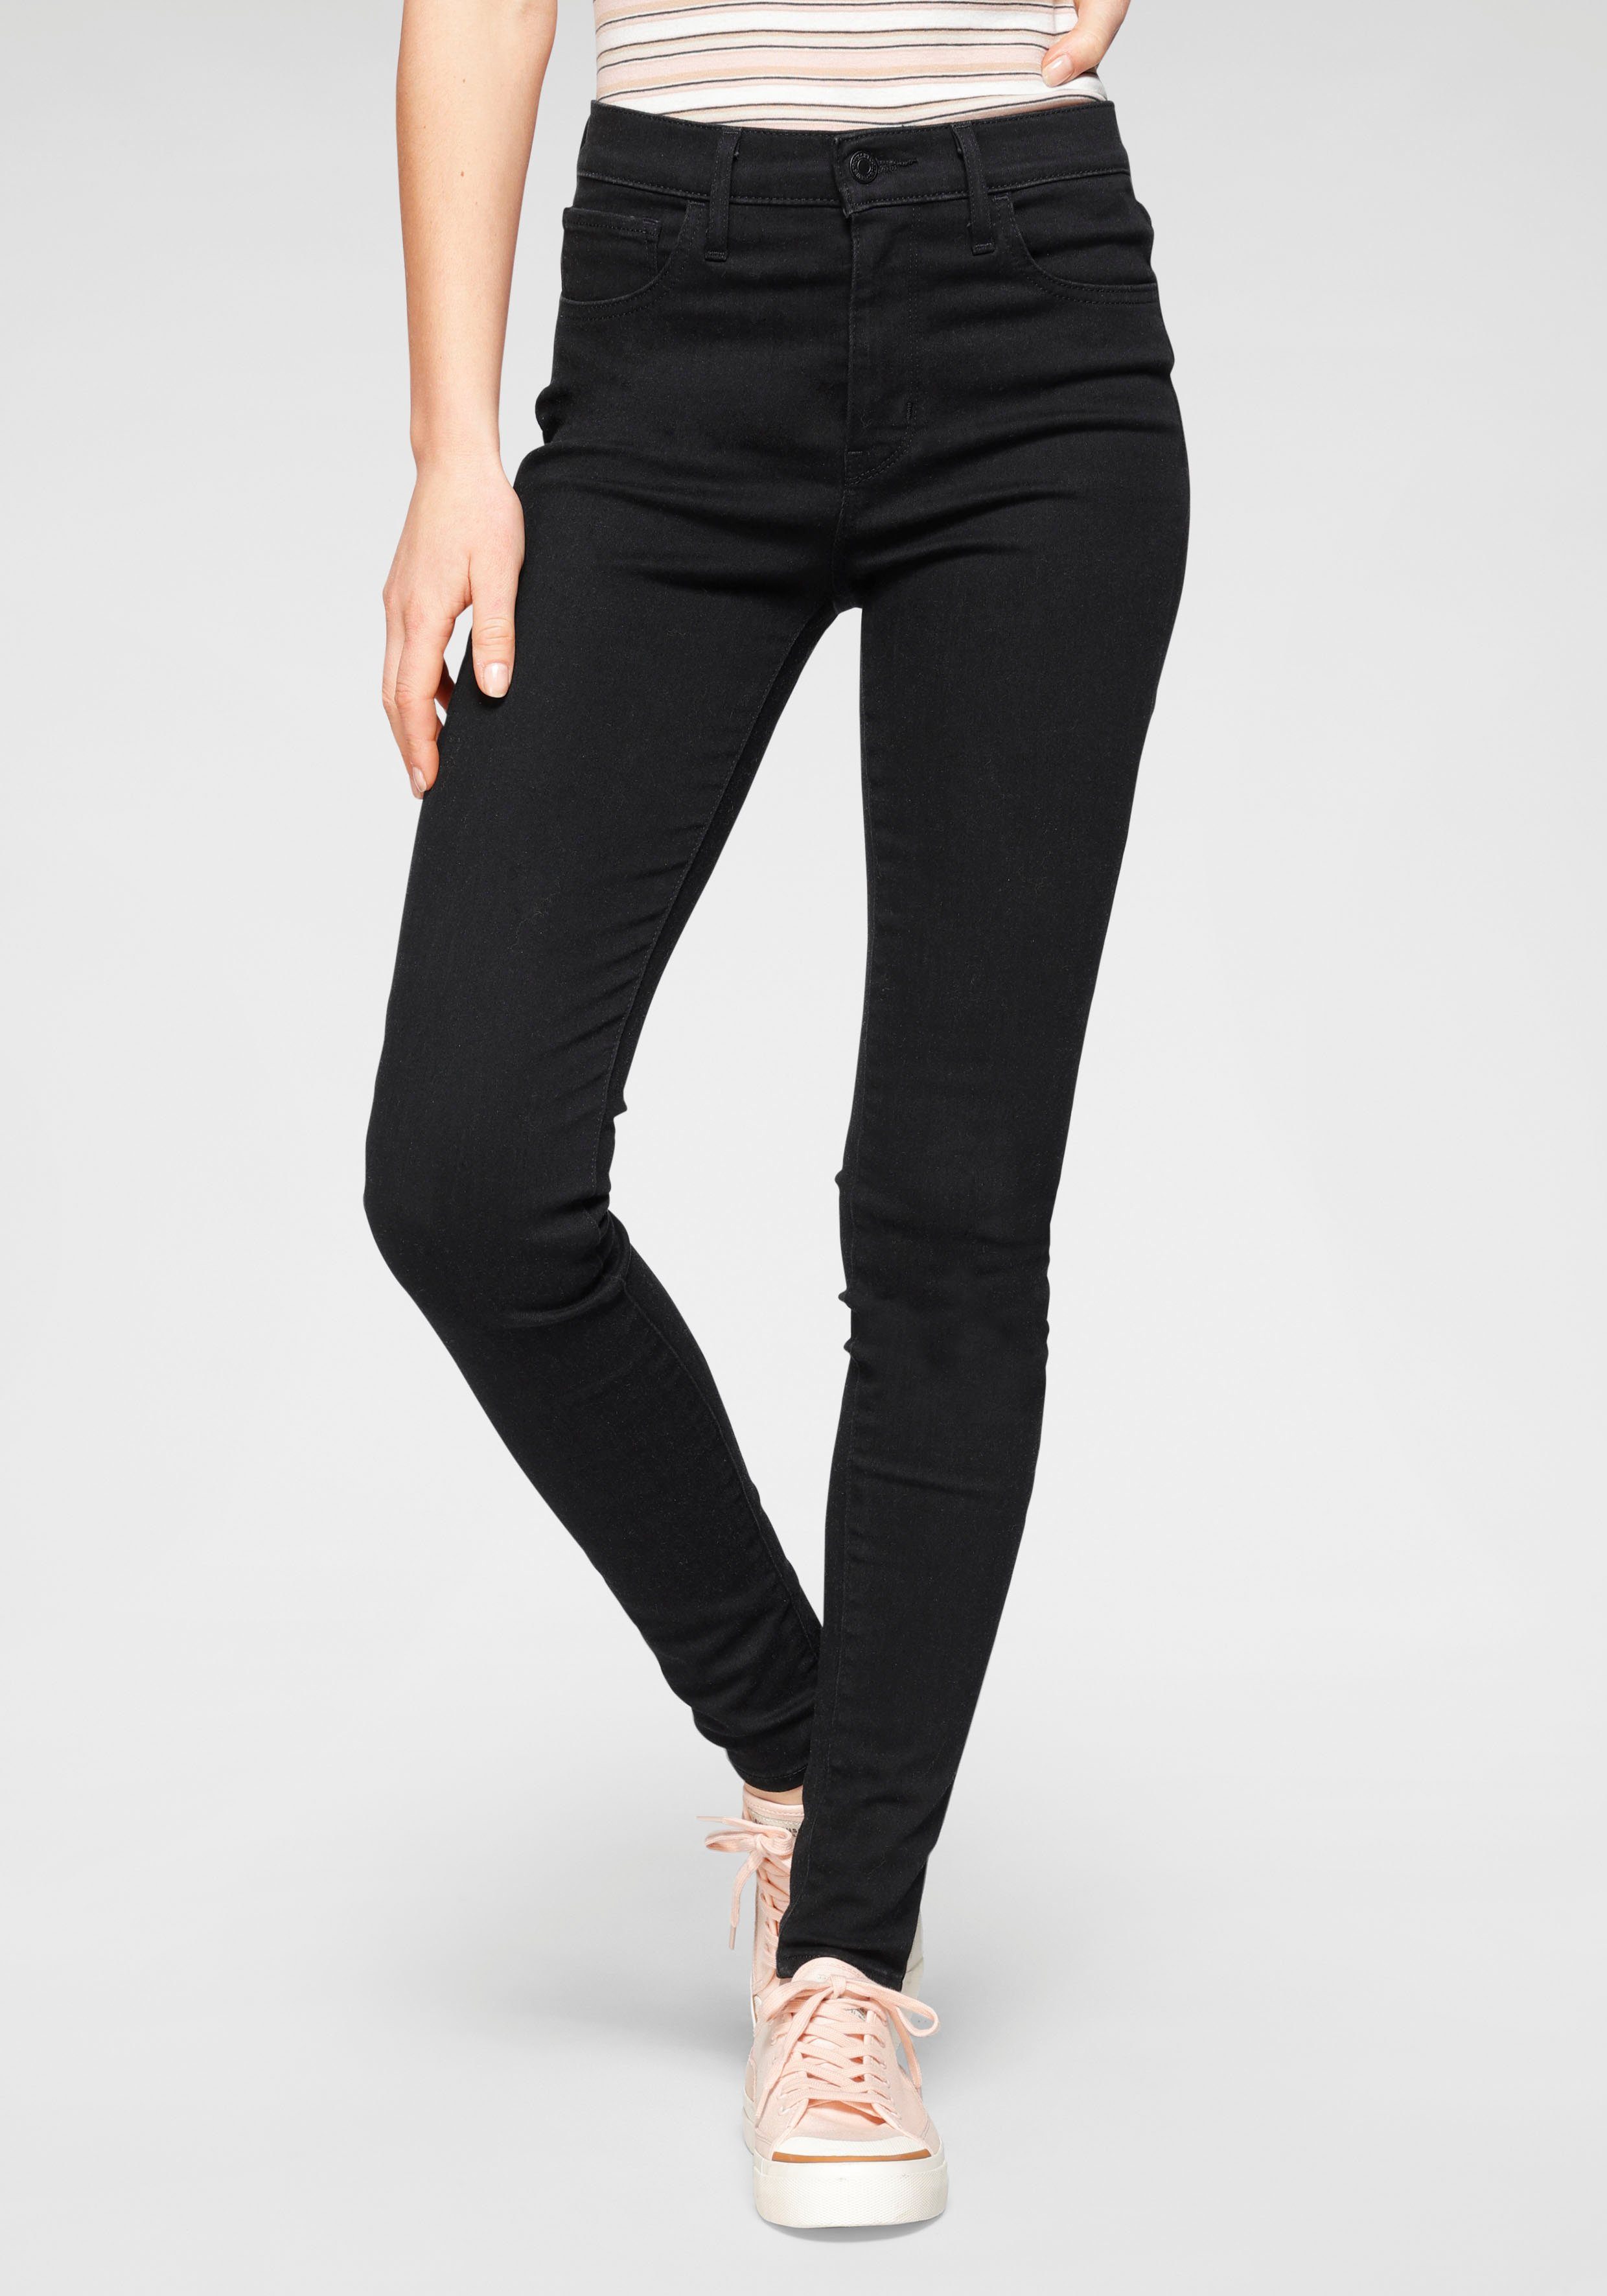 Schwarze Jeans online kaufen | OTTO